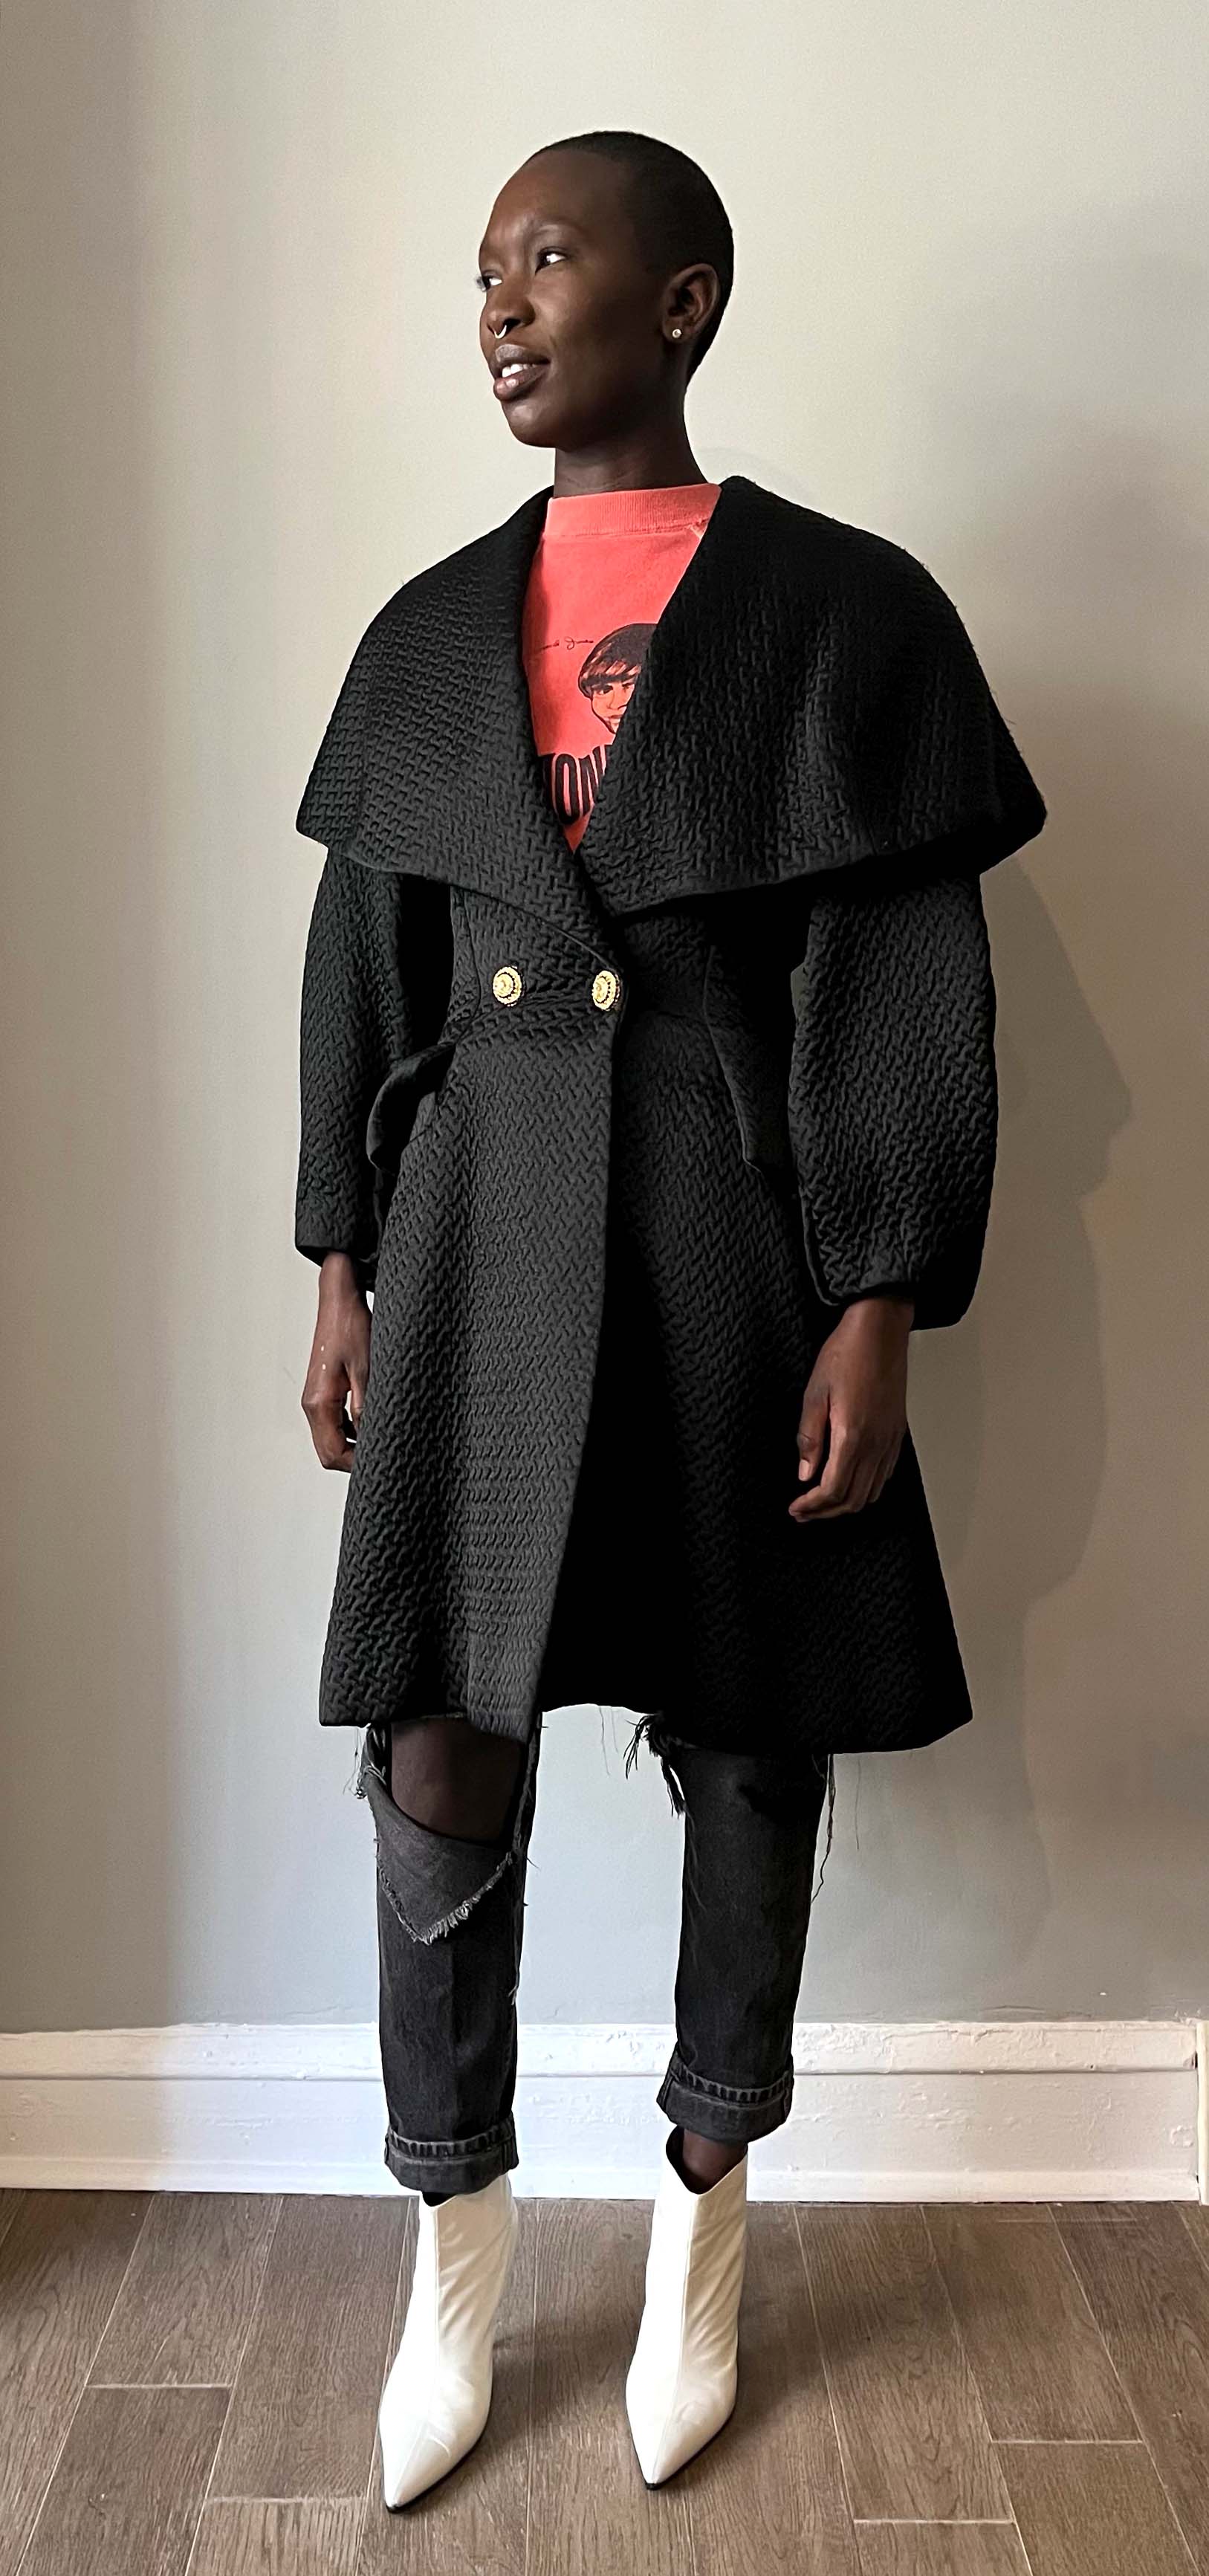 Christian Lacroix demi-couture black wool-blend sculptural coat